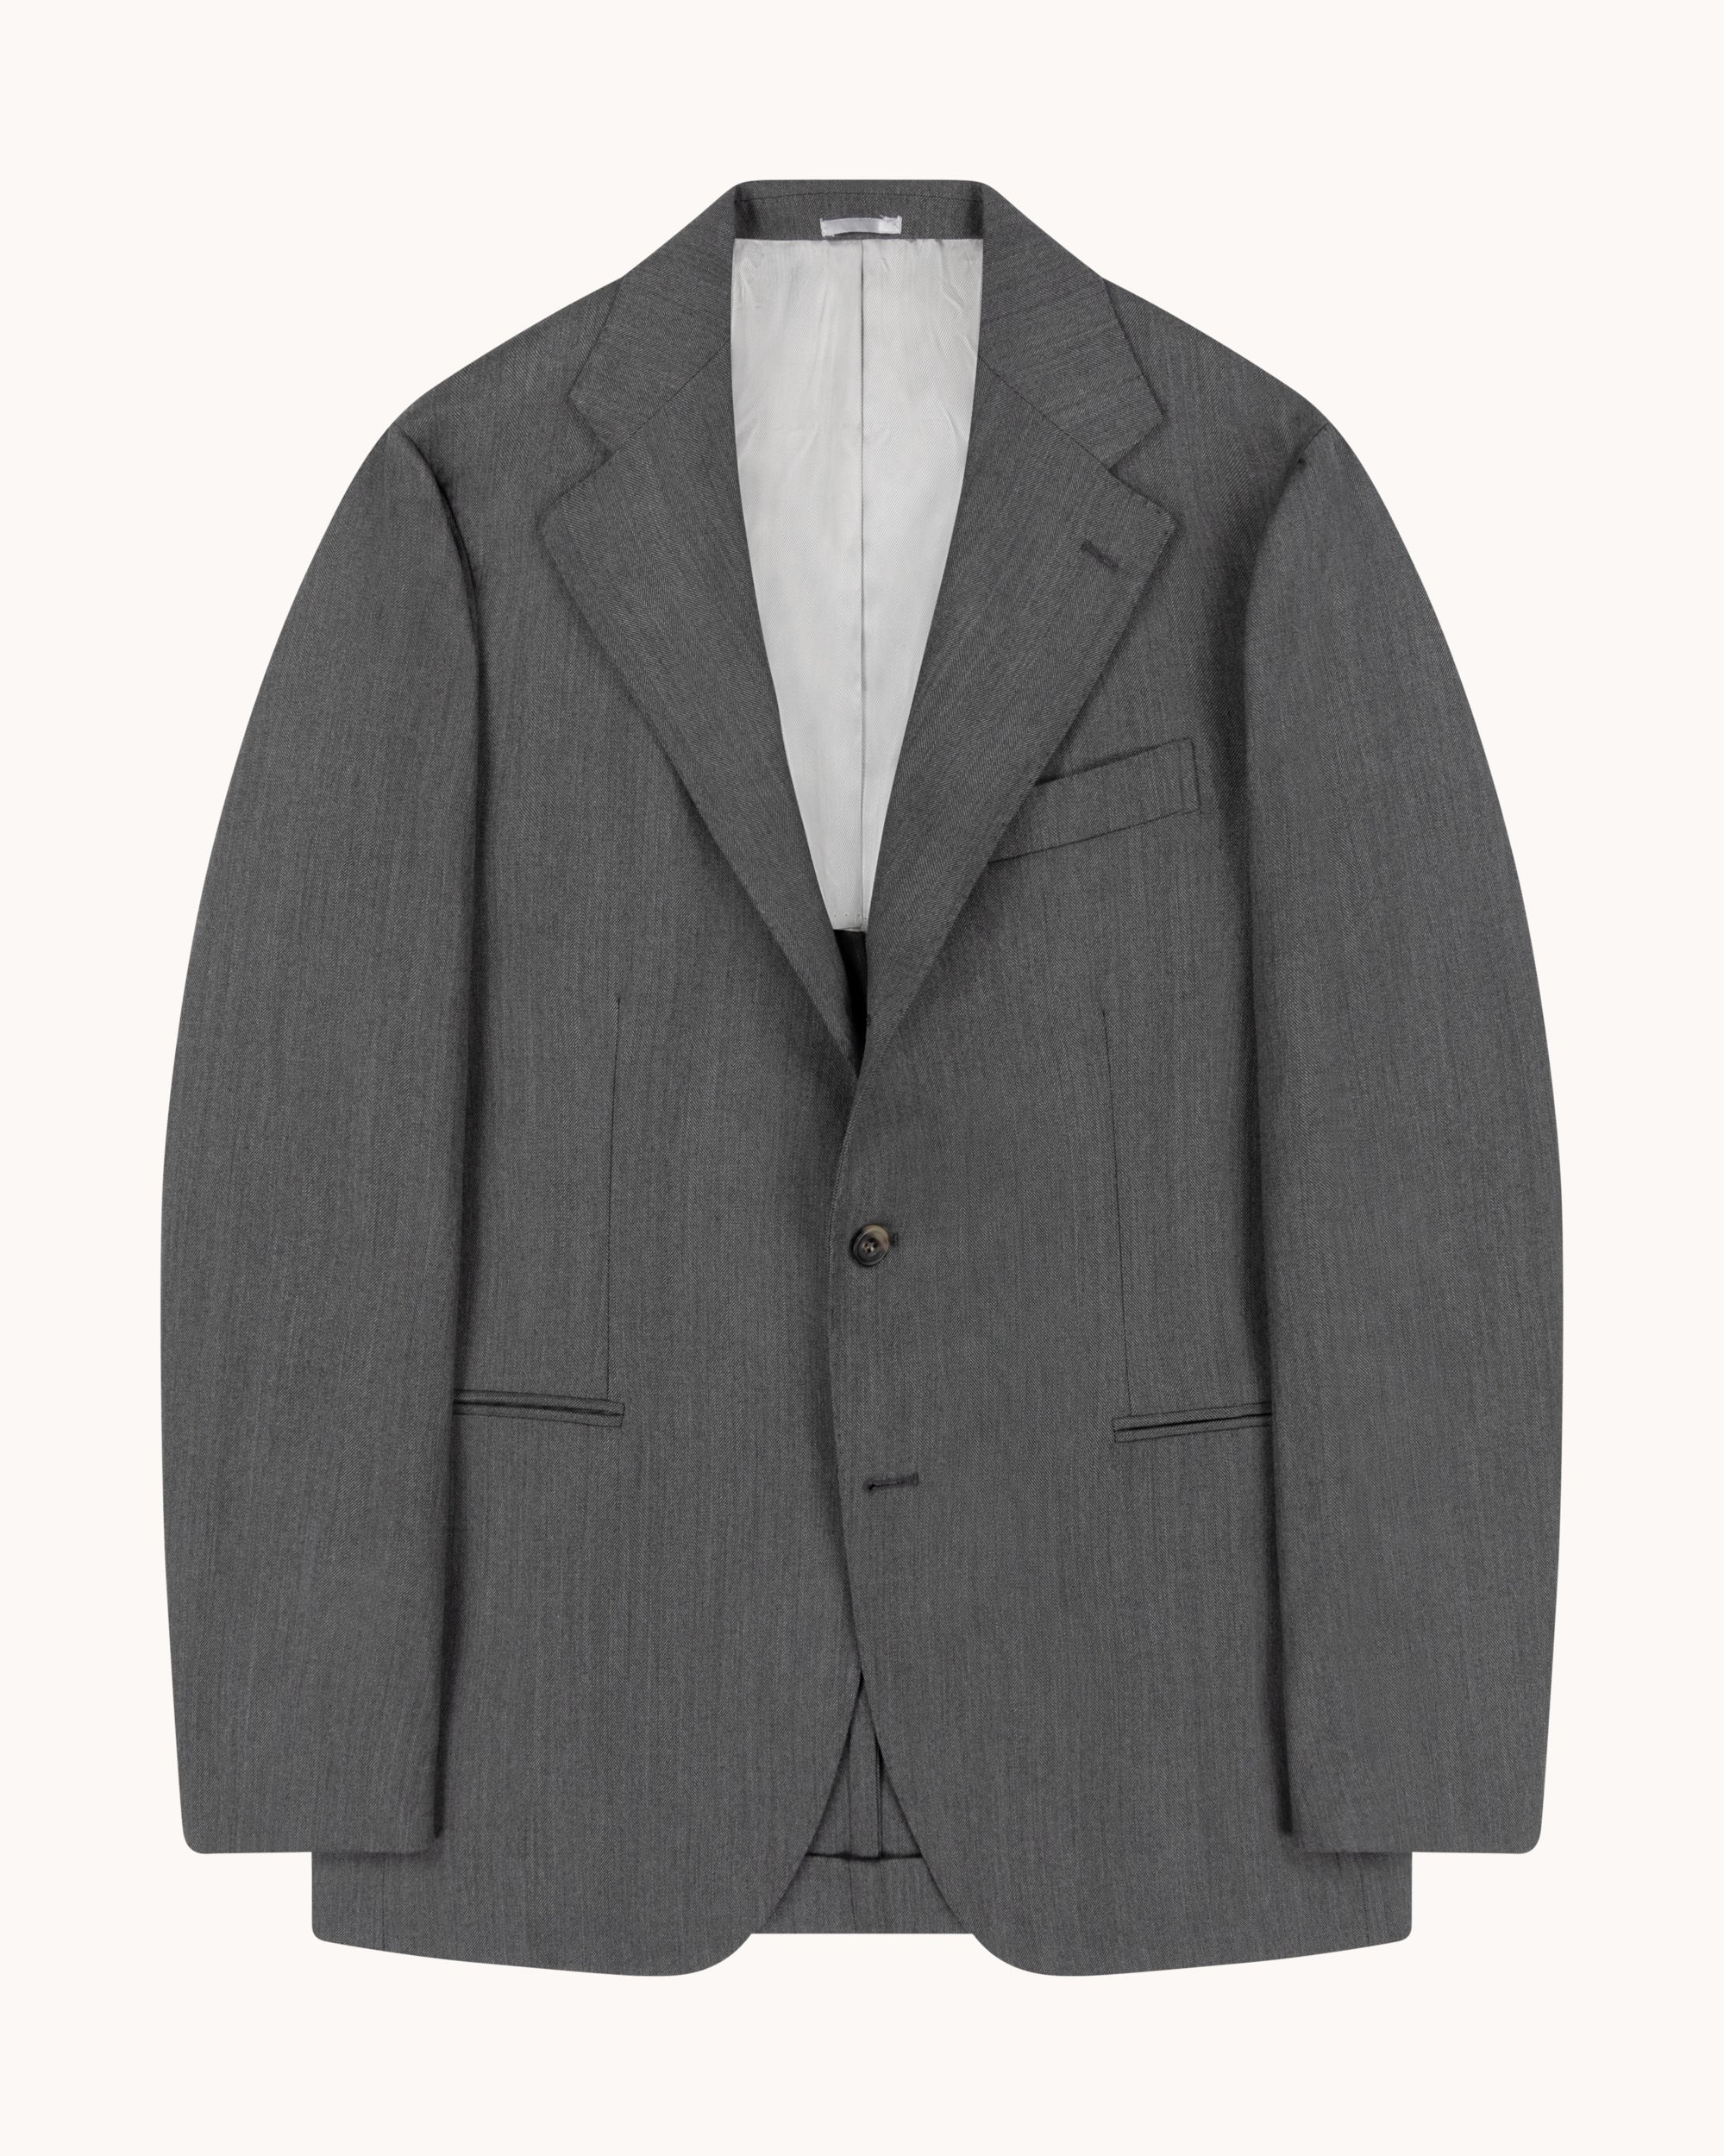 Sport Jacket - Mid Grey Herringbone Wool